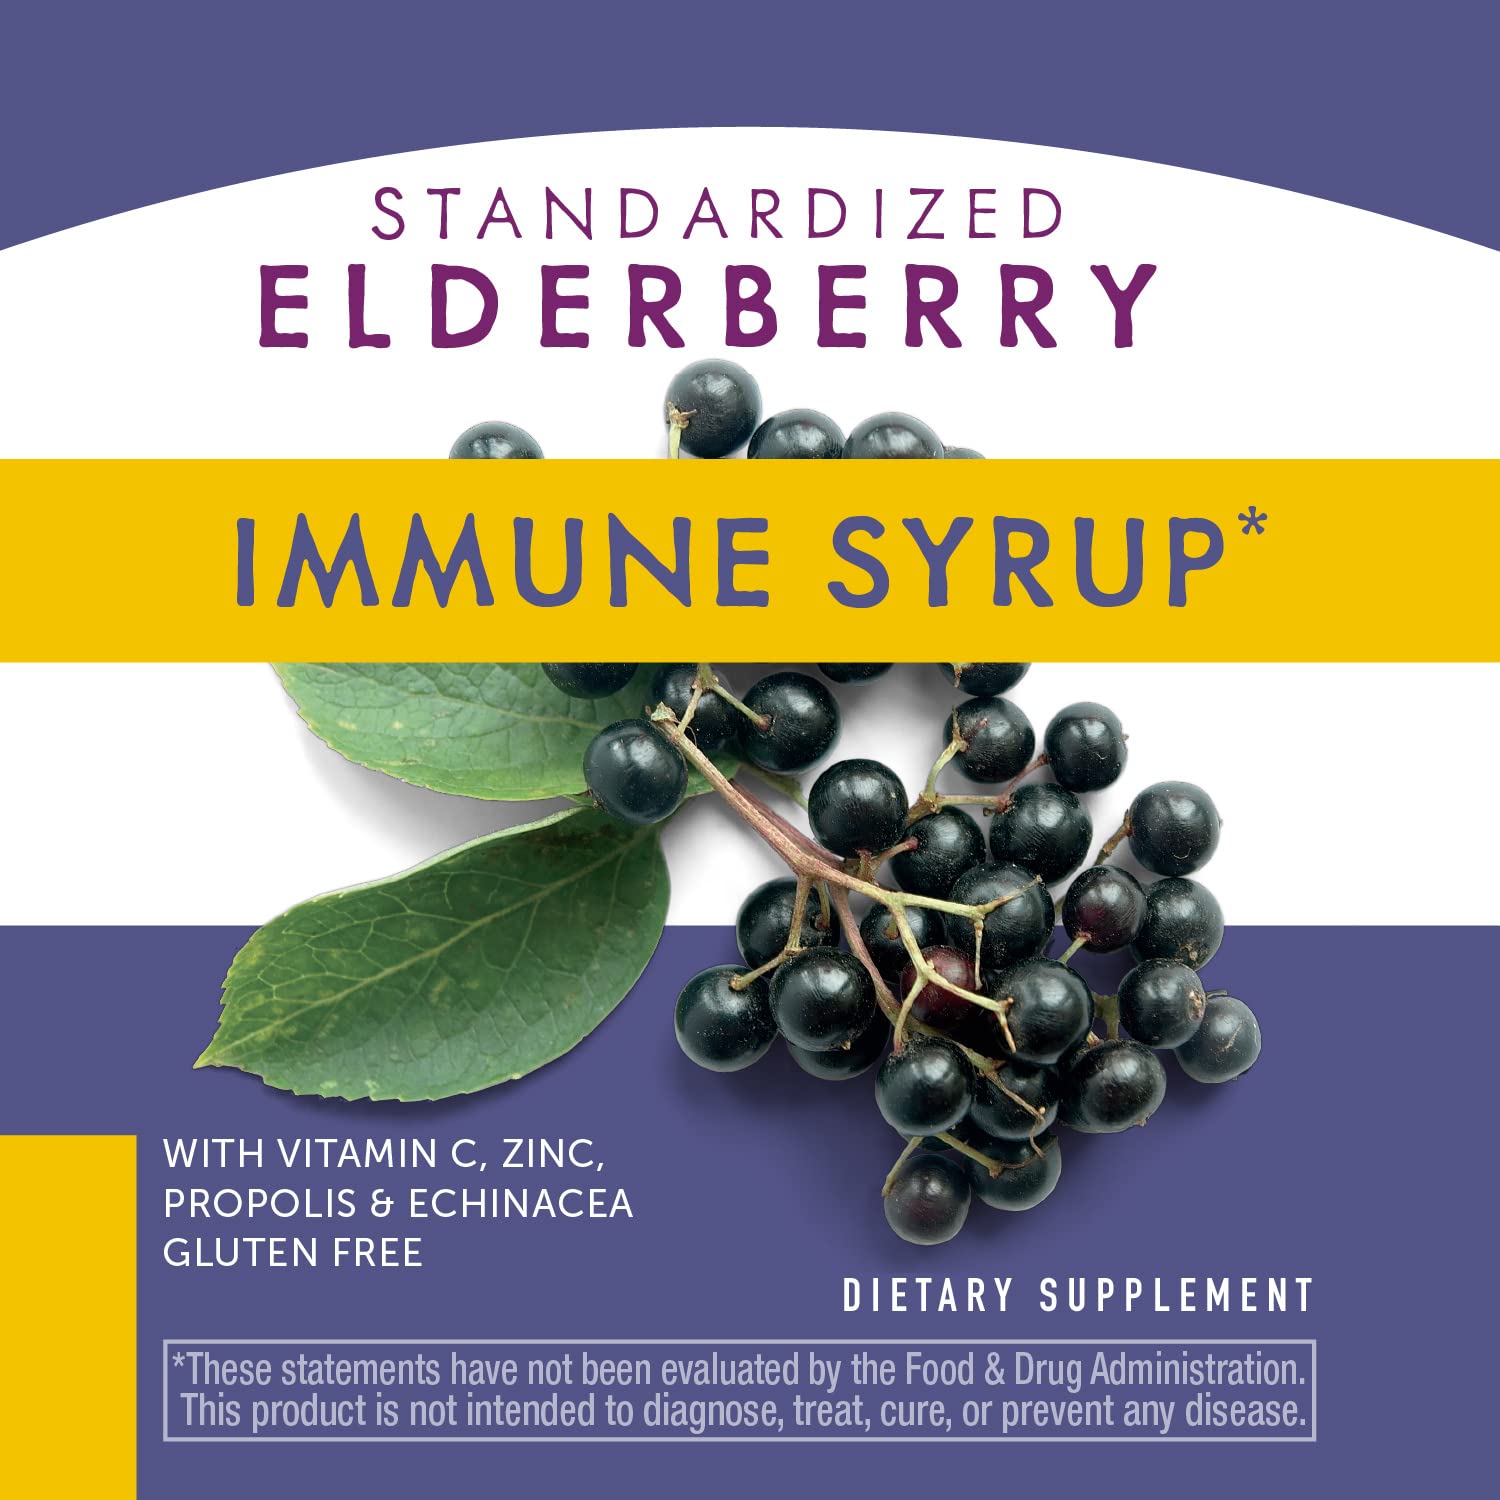 Nature's Way Sambucus Immune* Elderberry Syrup with Echinacea, Zinc & Vitamin C, 4 Oz (Pack of 2)